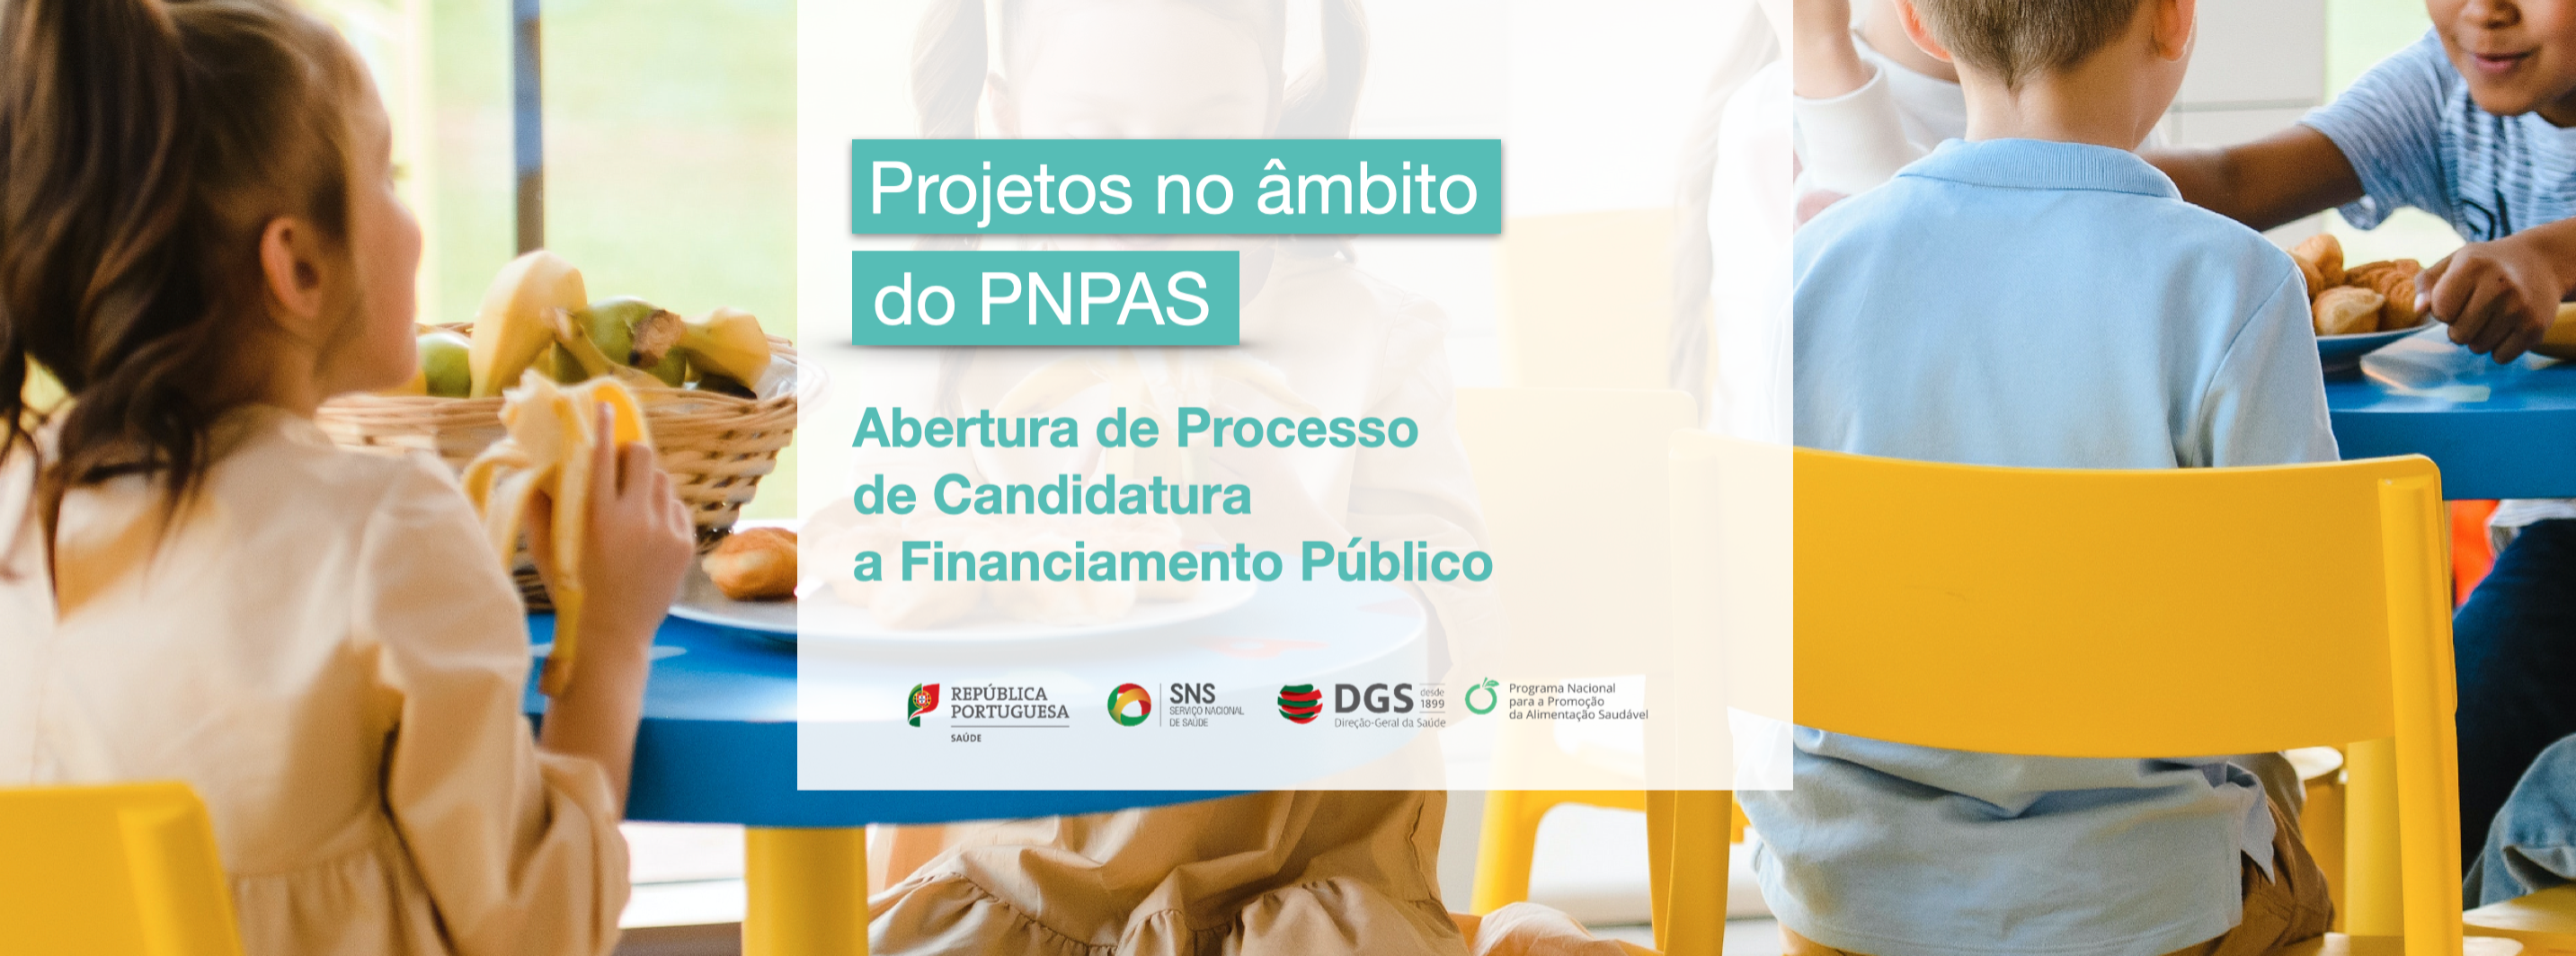 Abertura do Processo de Candidatura a Financiamento Público a Projetos no âmbito do PNPAS